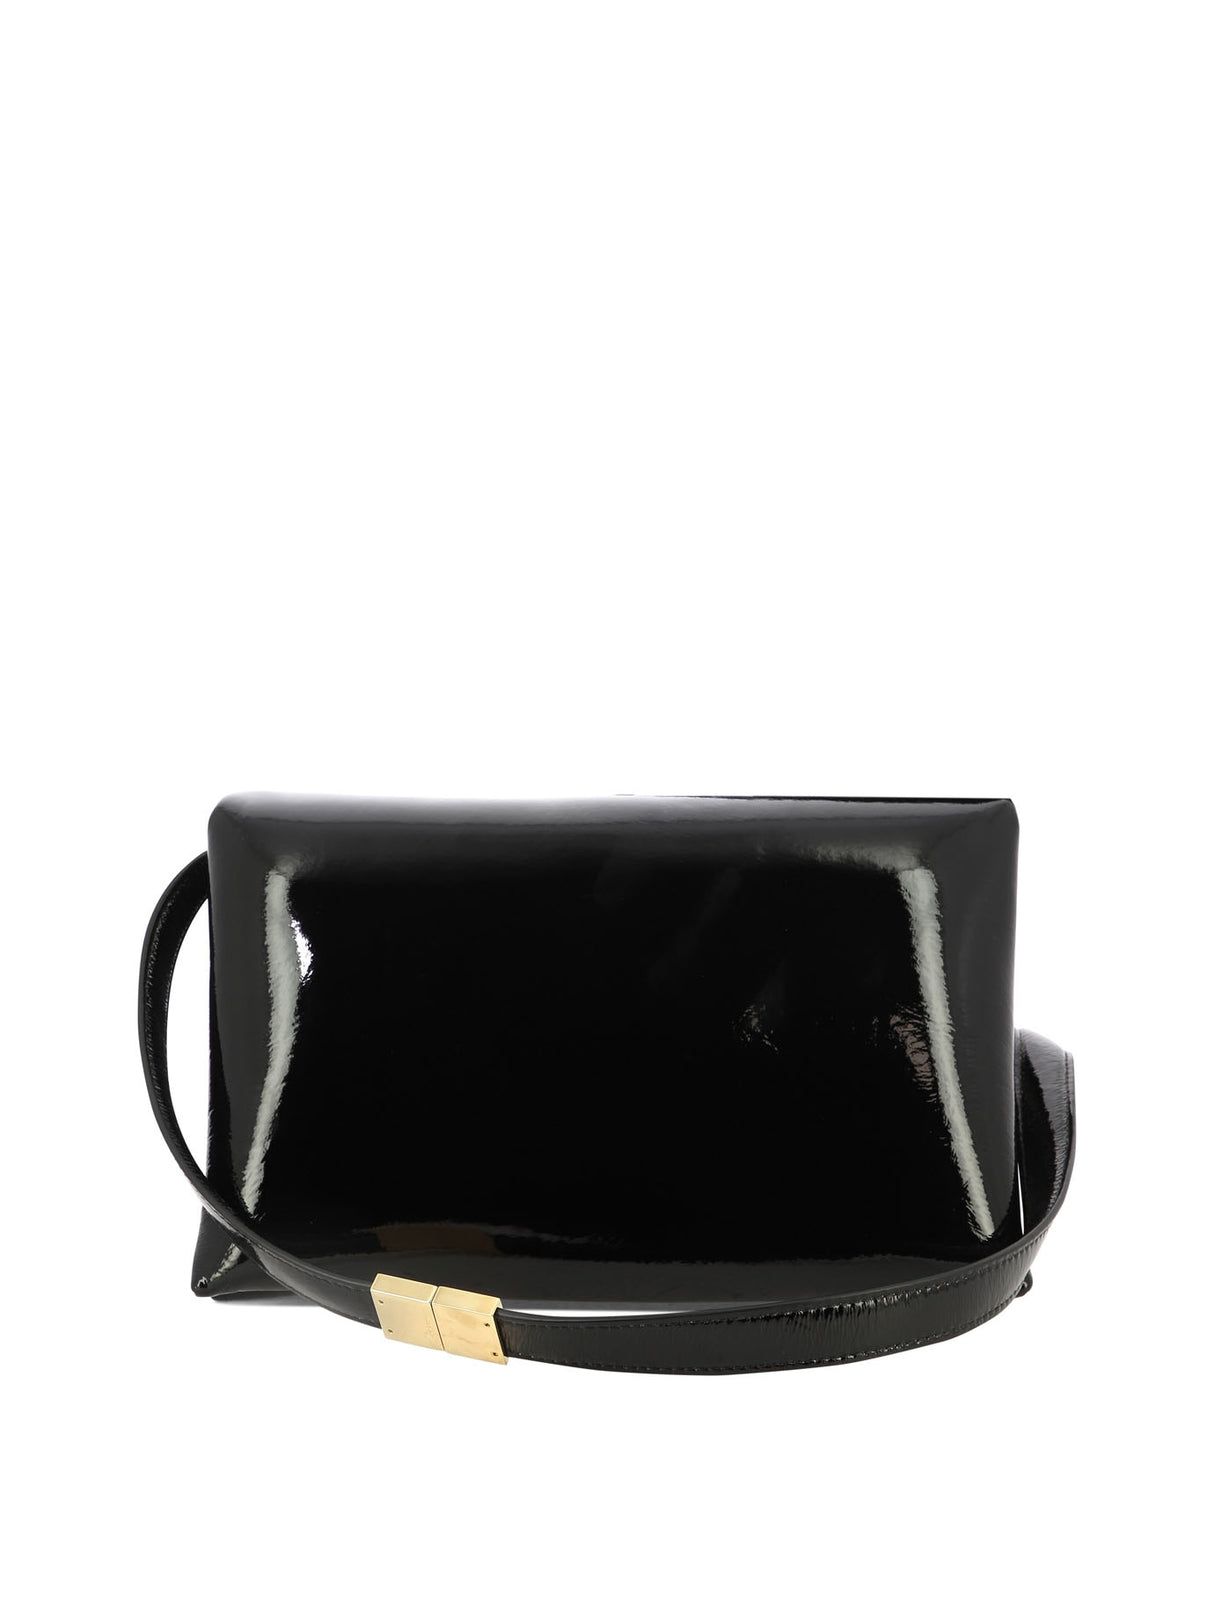 Túi đeo chéo vai đen Prisma cho phụ nữ - Bộ sưu tập FW23